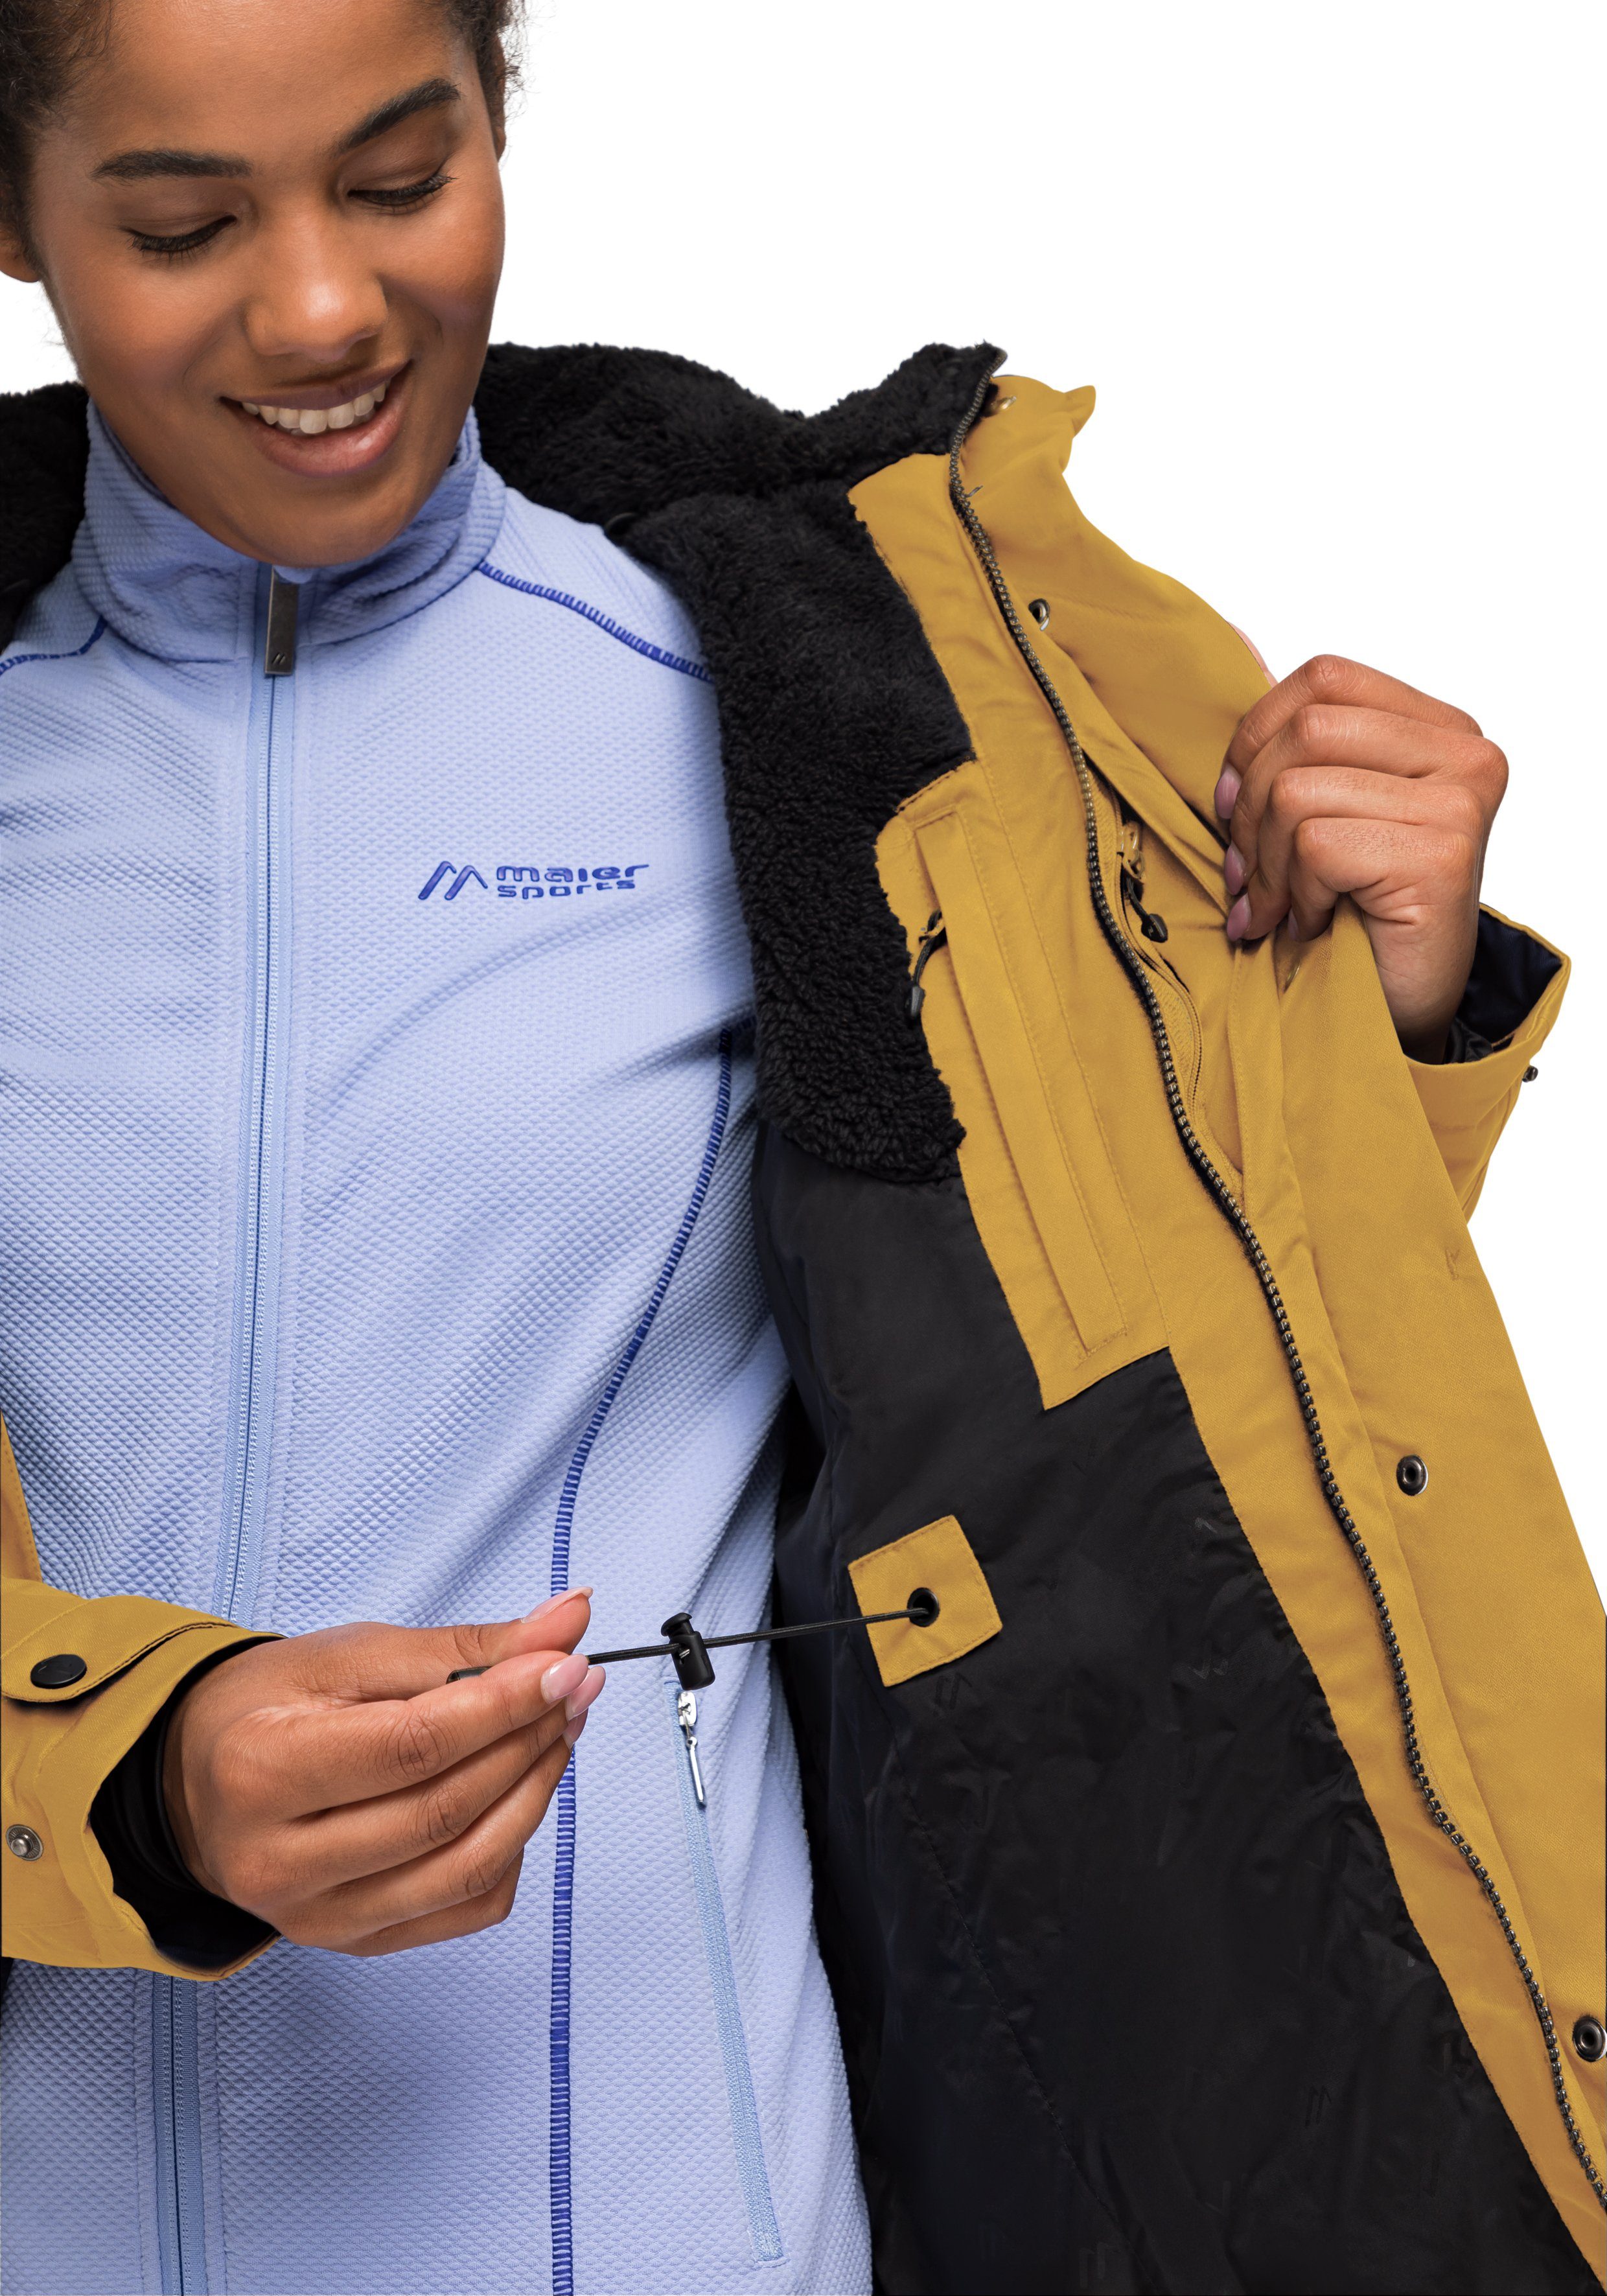 Maier Sports vollem Wetterschutz Outdoor-Mantel Lisa Funktionsjacke 2 sonnengelb mit